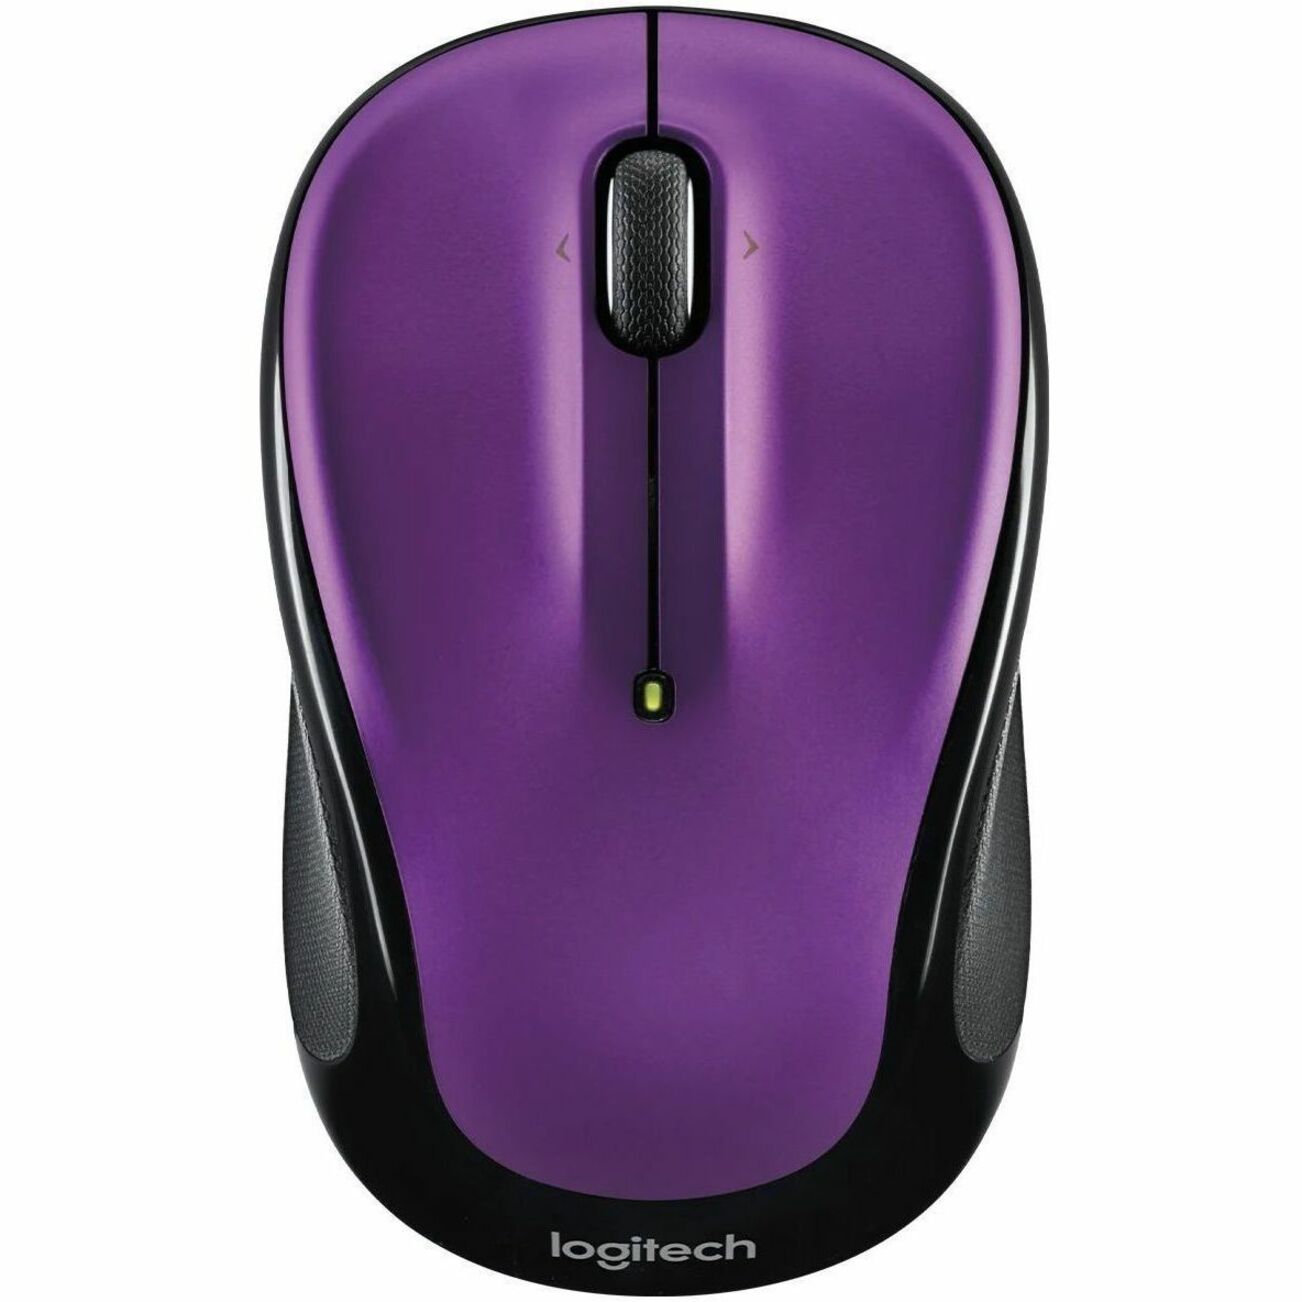 Logitech 910-006826 M325S Mouse, Vivid Violet Wireless Mouse